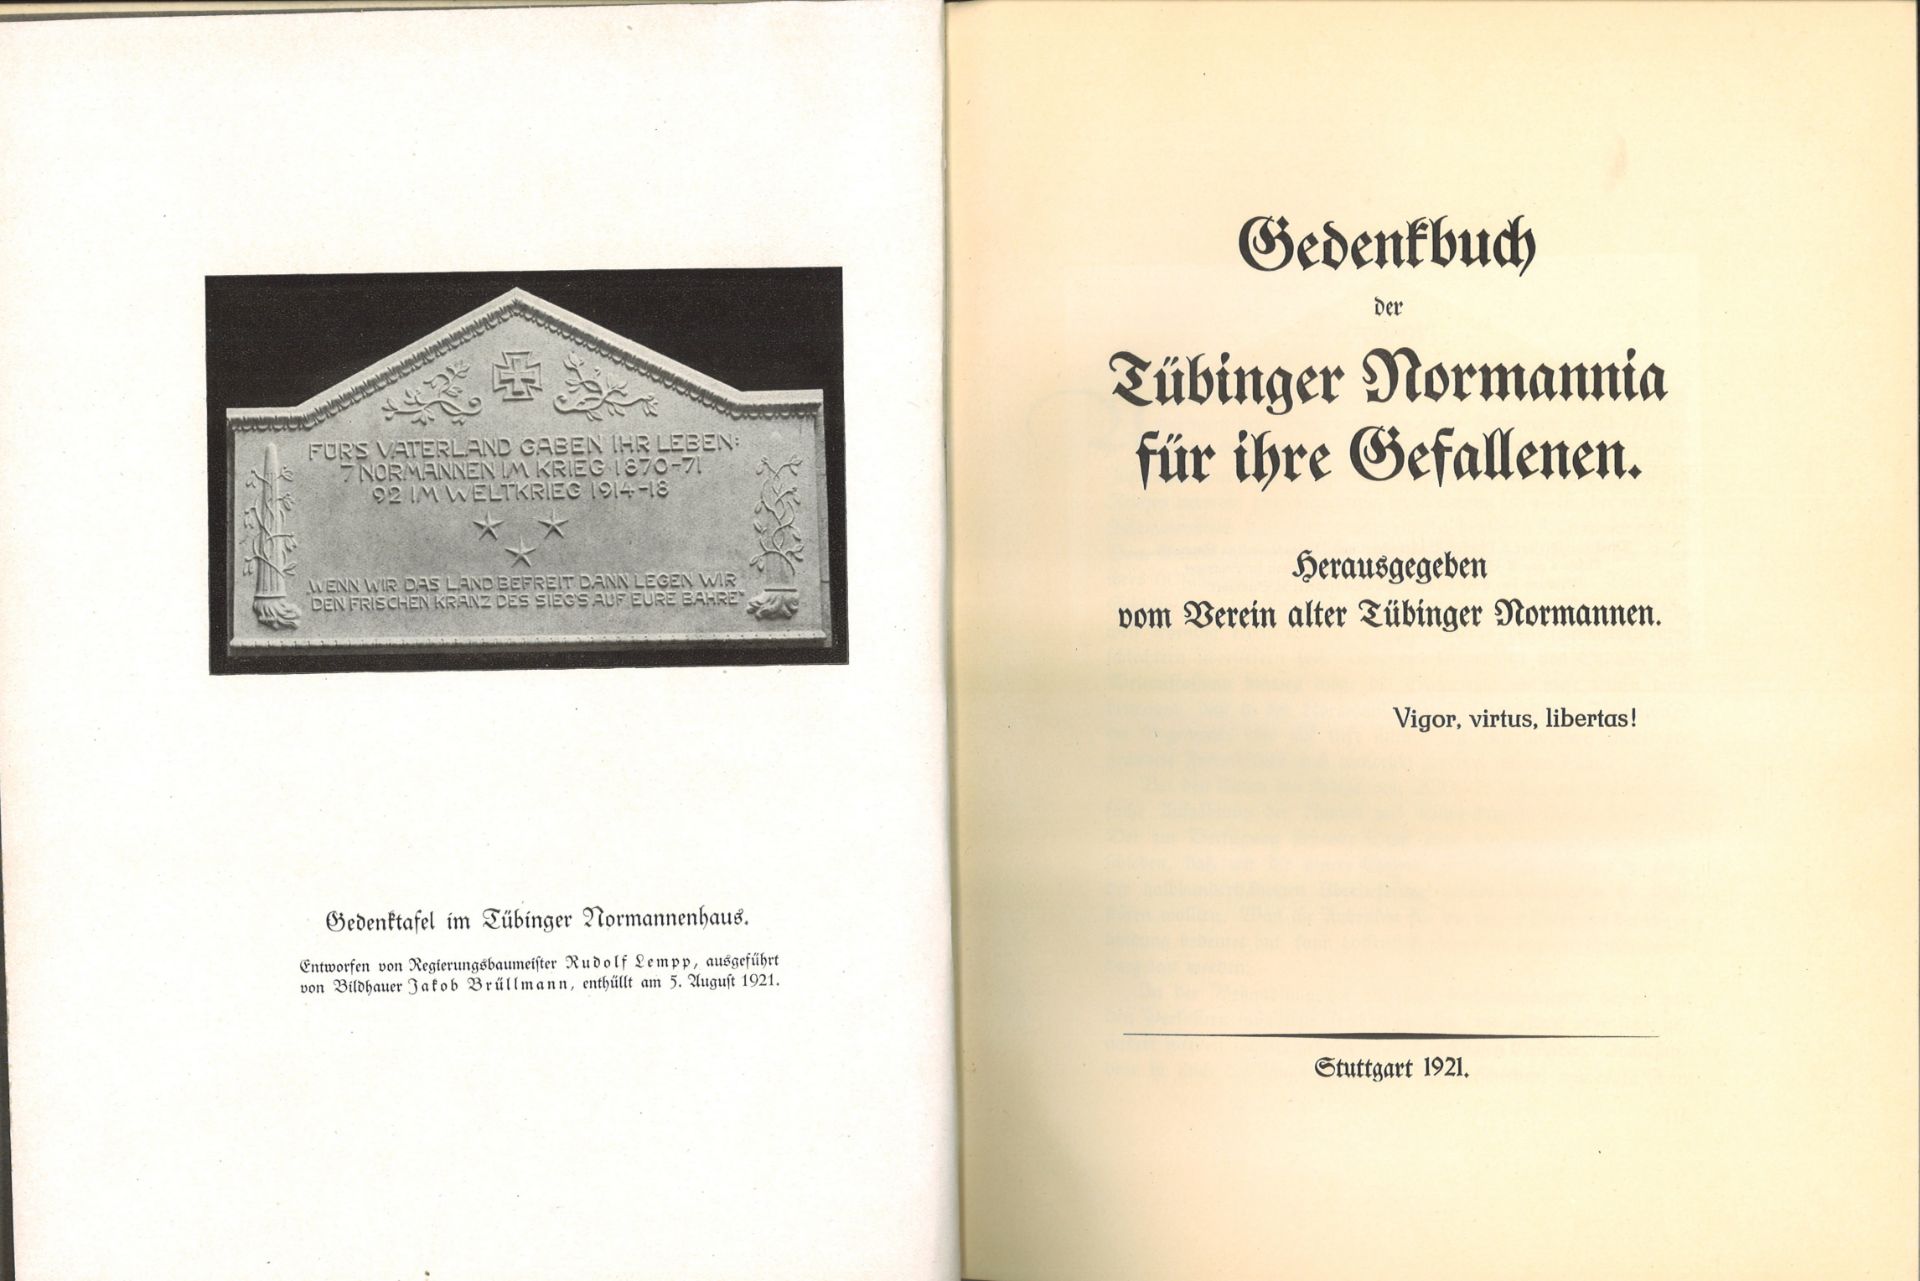 Gedenkbuch der Tübinger Normannia für ihe Gefallenen. Herausgegeben vom Verein alter Tübinger